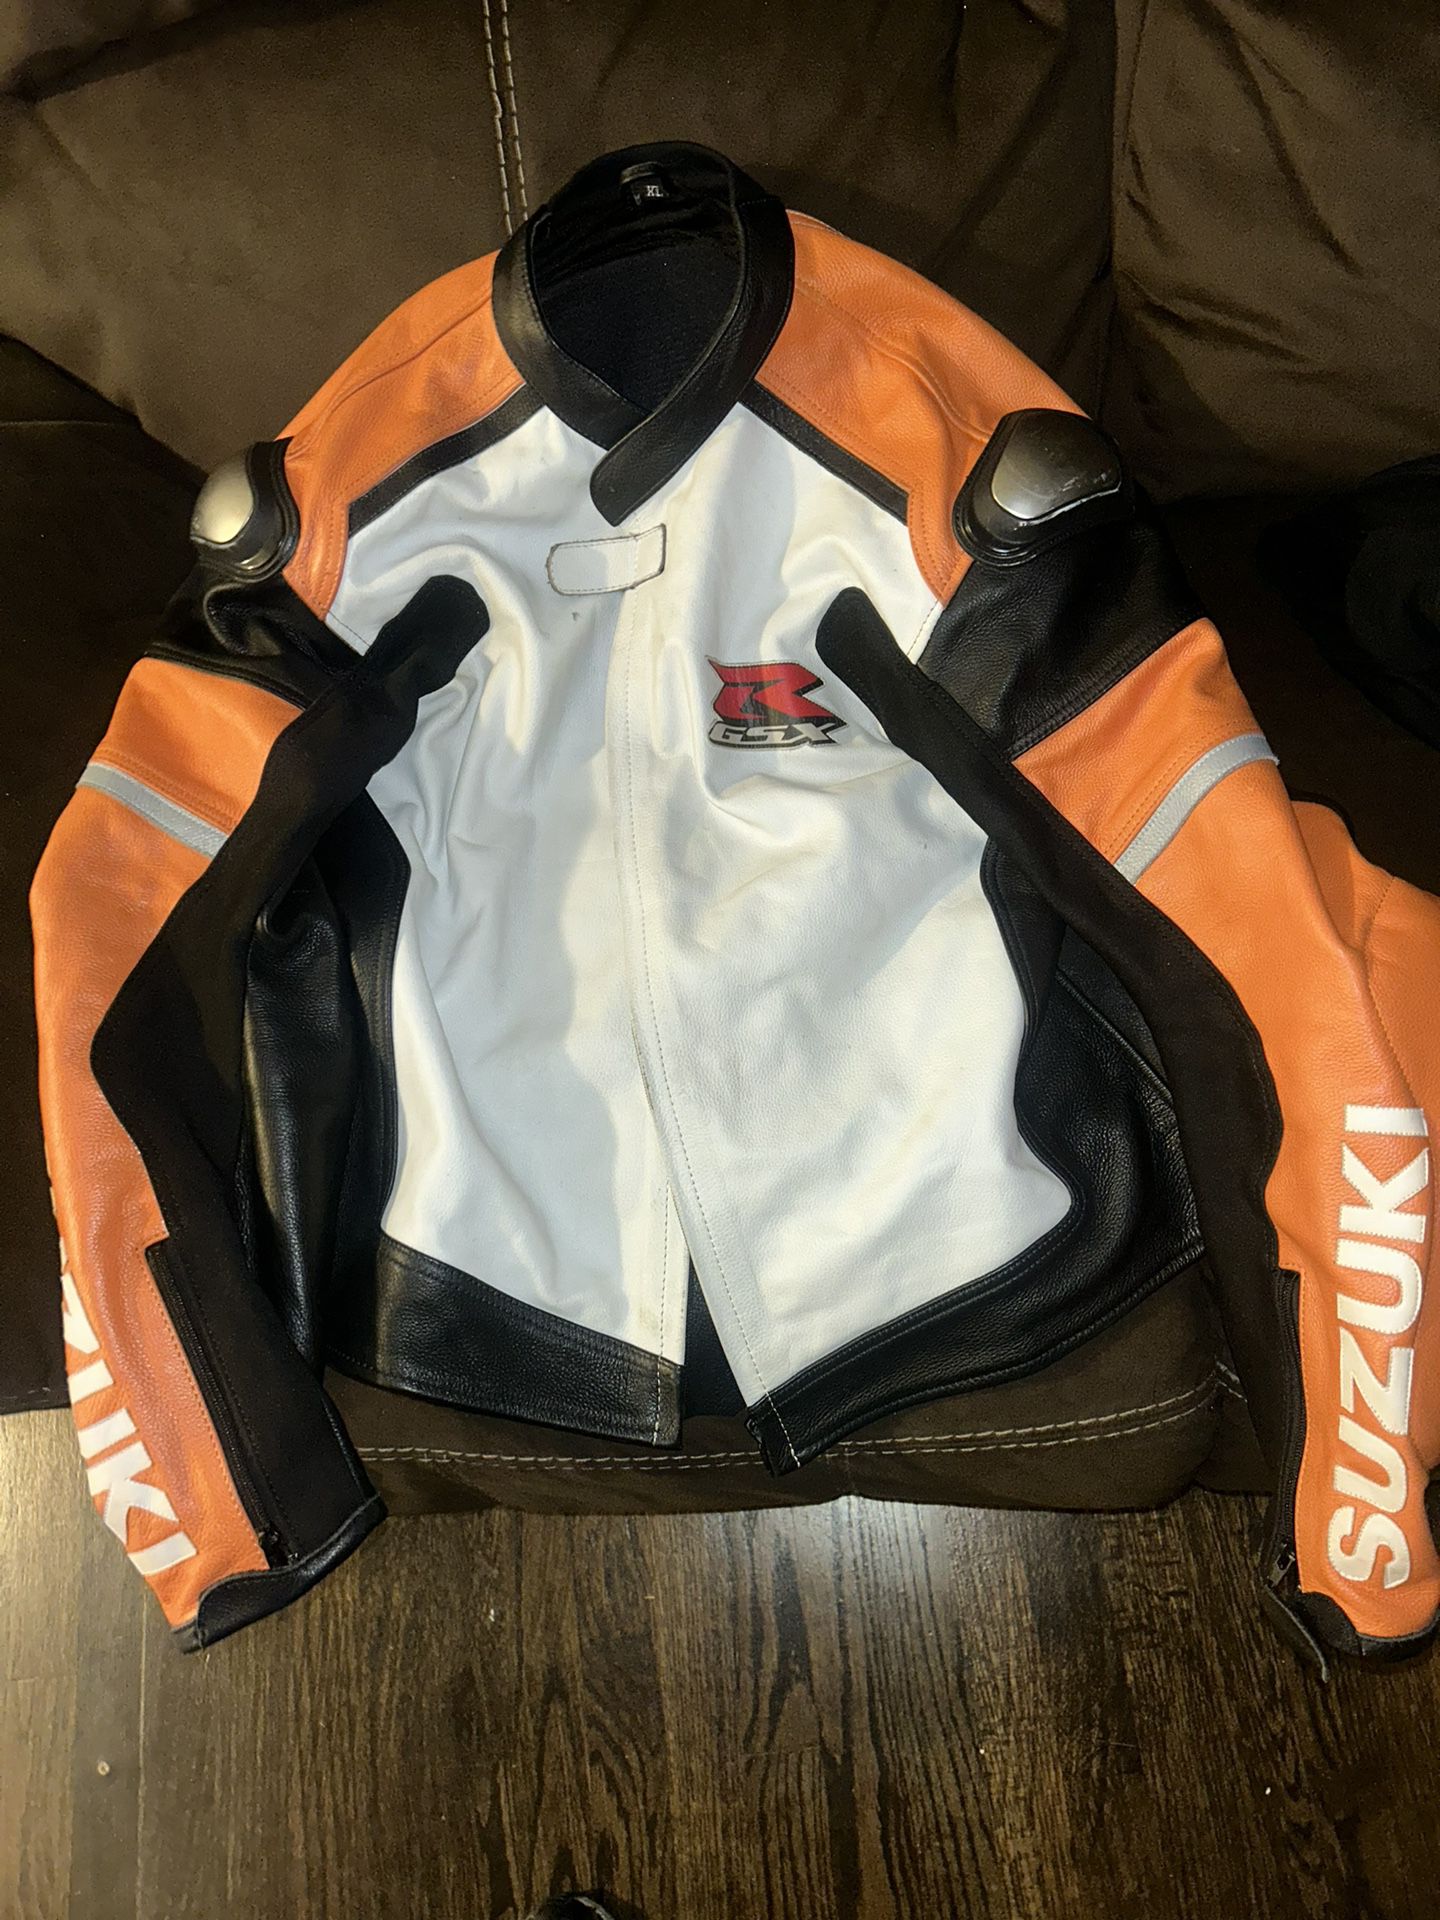 Suzuki GSXR Leather racing jacket 